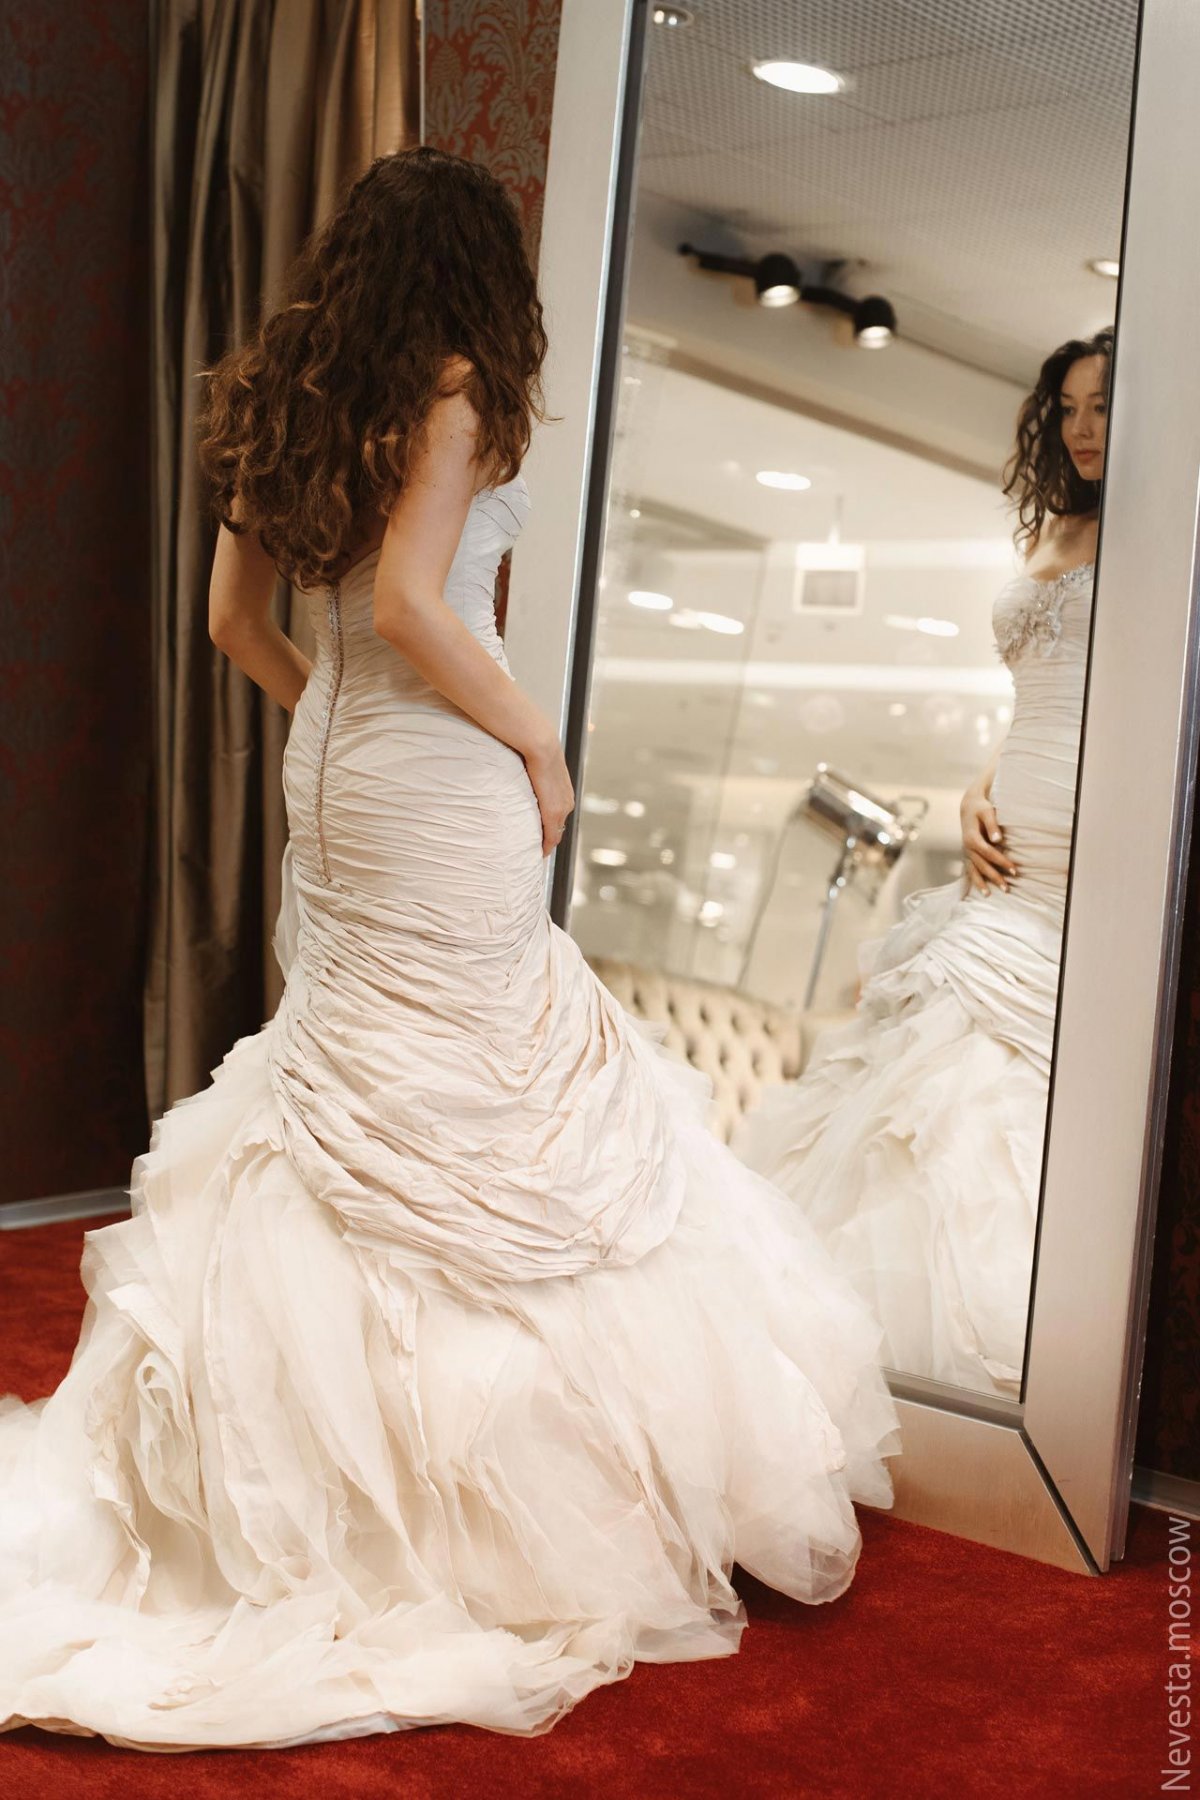 Рената Байкова примеряет свадебное платье фото 7